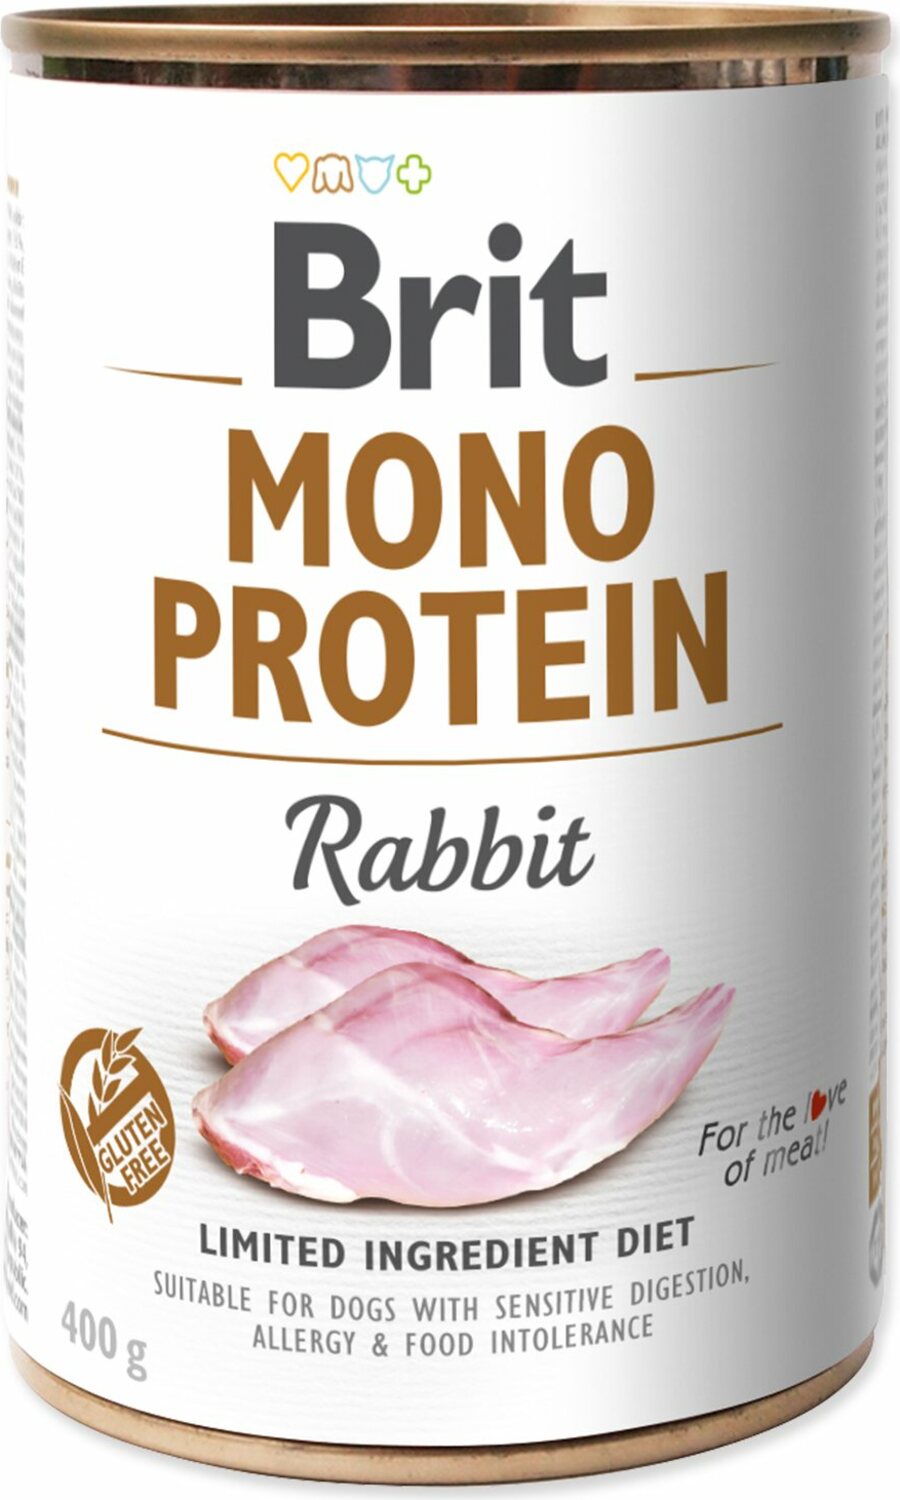 Konzerva Brit Mono protein králík 400g